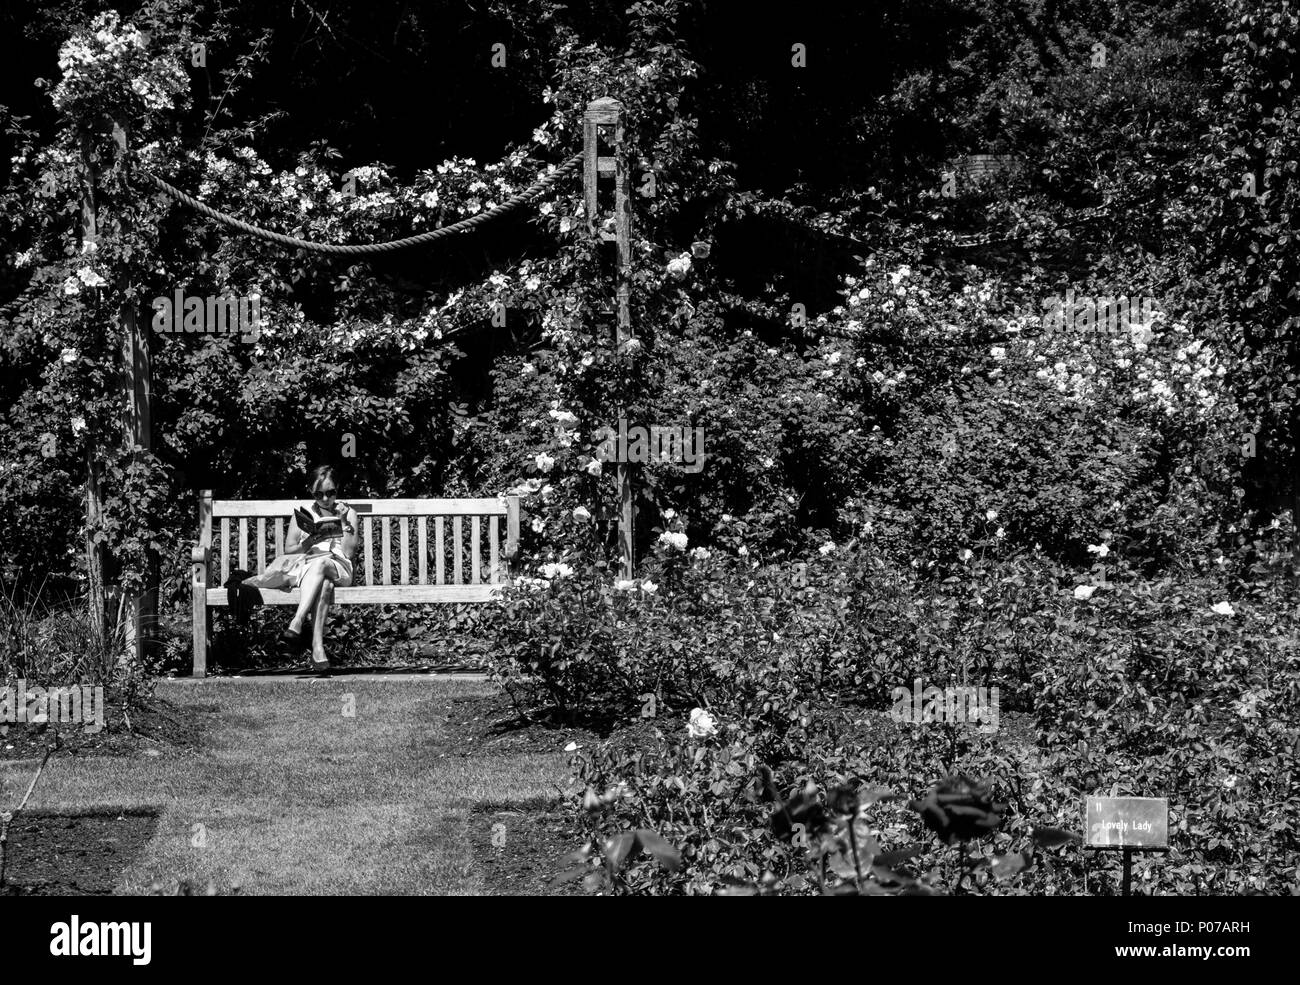 Donna libro lettura, Queen Mary's Gardens, giardino di rose, Regents Park, London, England, Regno Unito, GB. Foto Stock